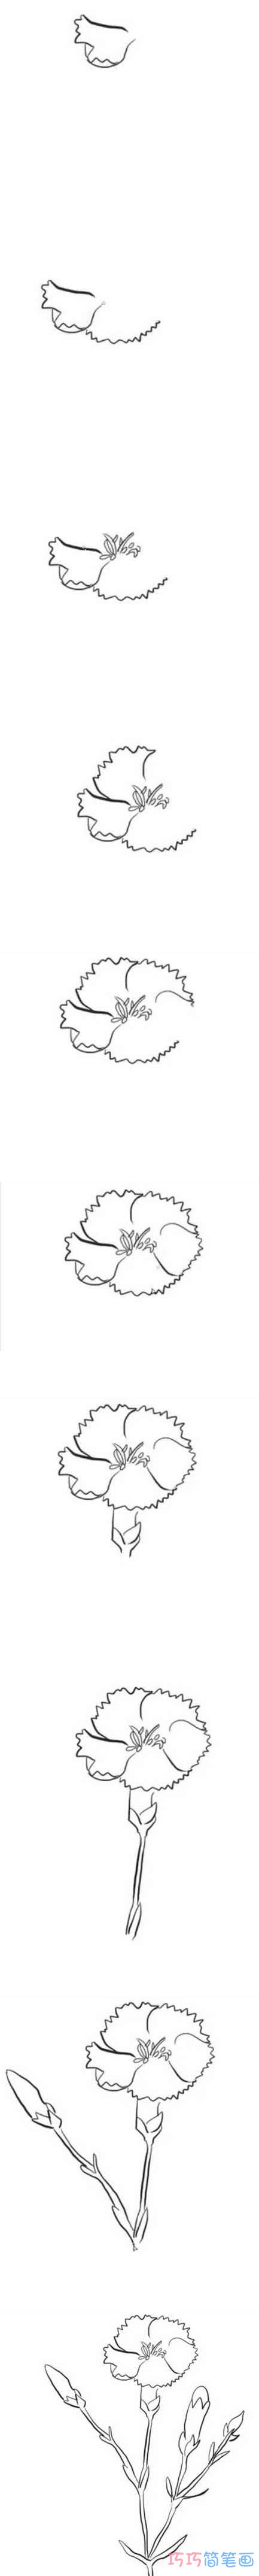 母亲节康乃馨的画法步骤图涂色 康乃馨简笔画图片